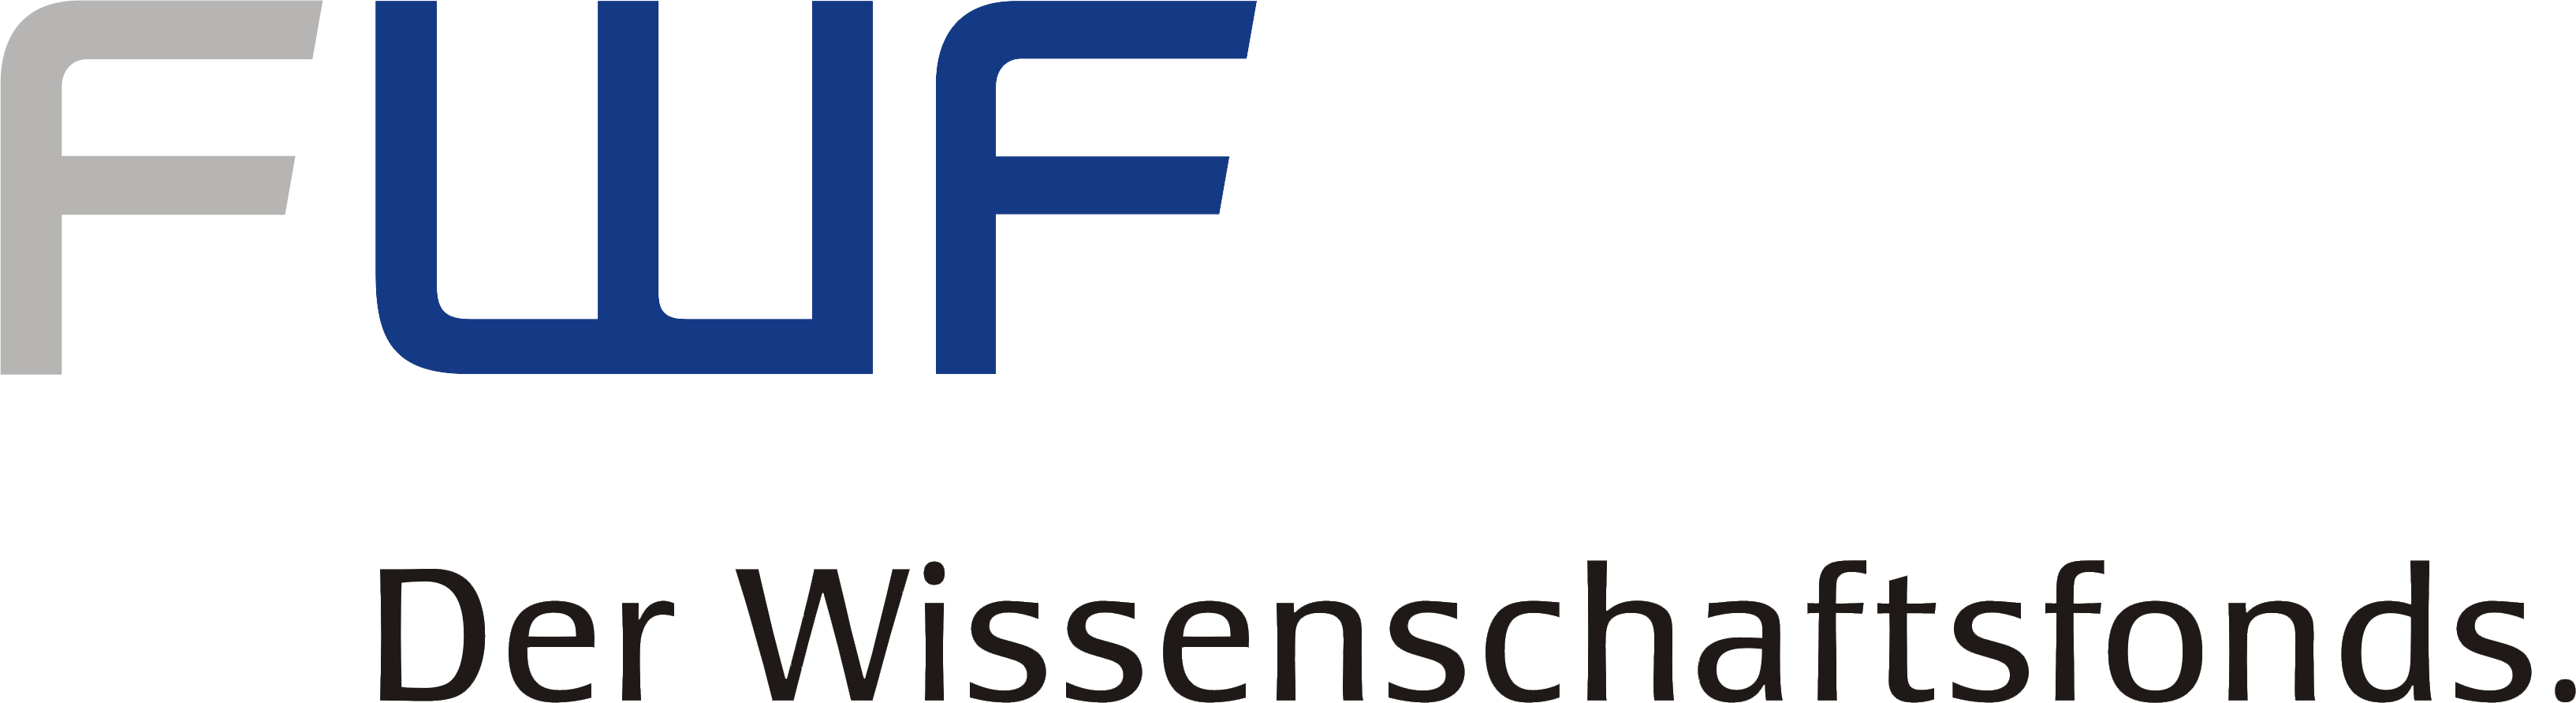 FWF - Der Wissenschaftsfond.